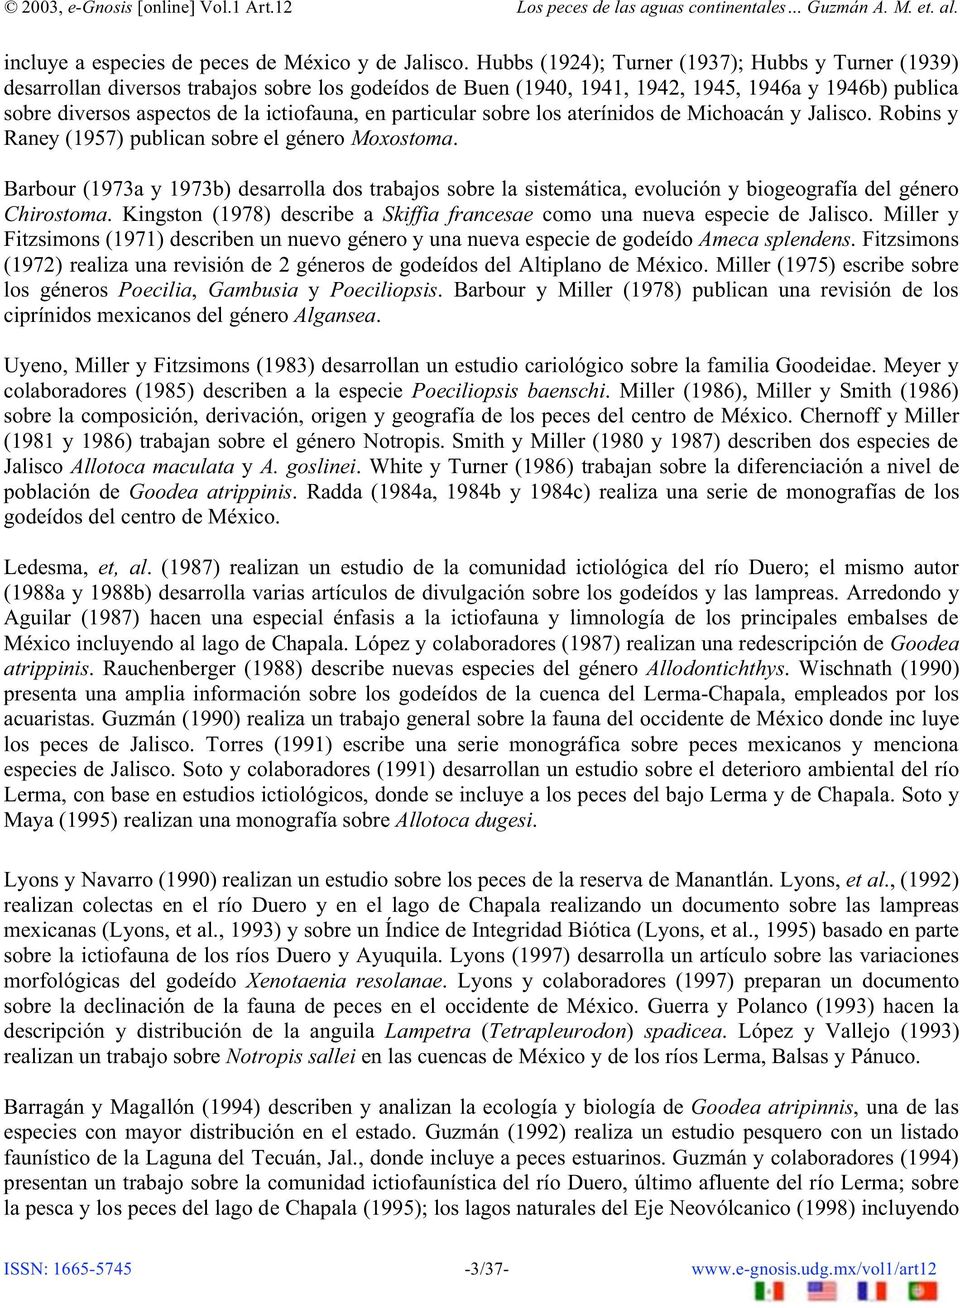 en particular sobre los aterínidos de Michoacán y Jalisco. Robins y Raney (1957) publican sobre el género Moxostoma.